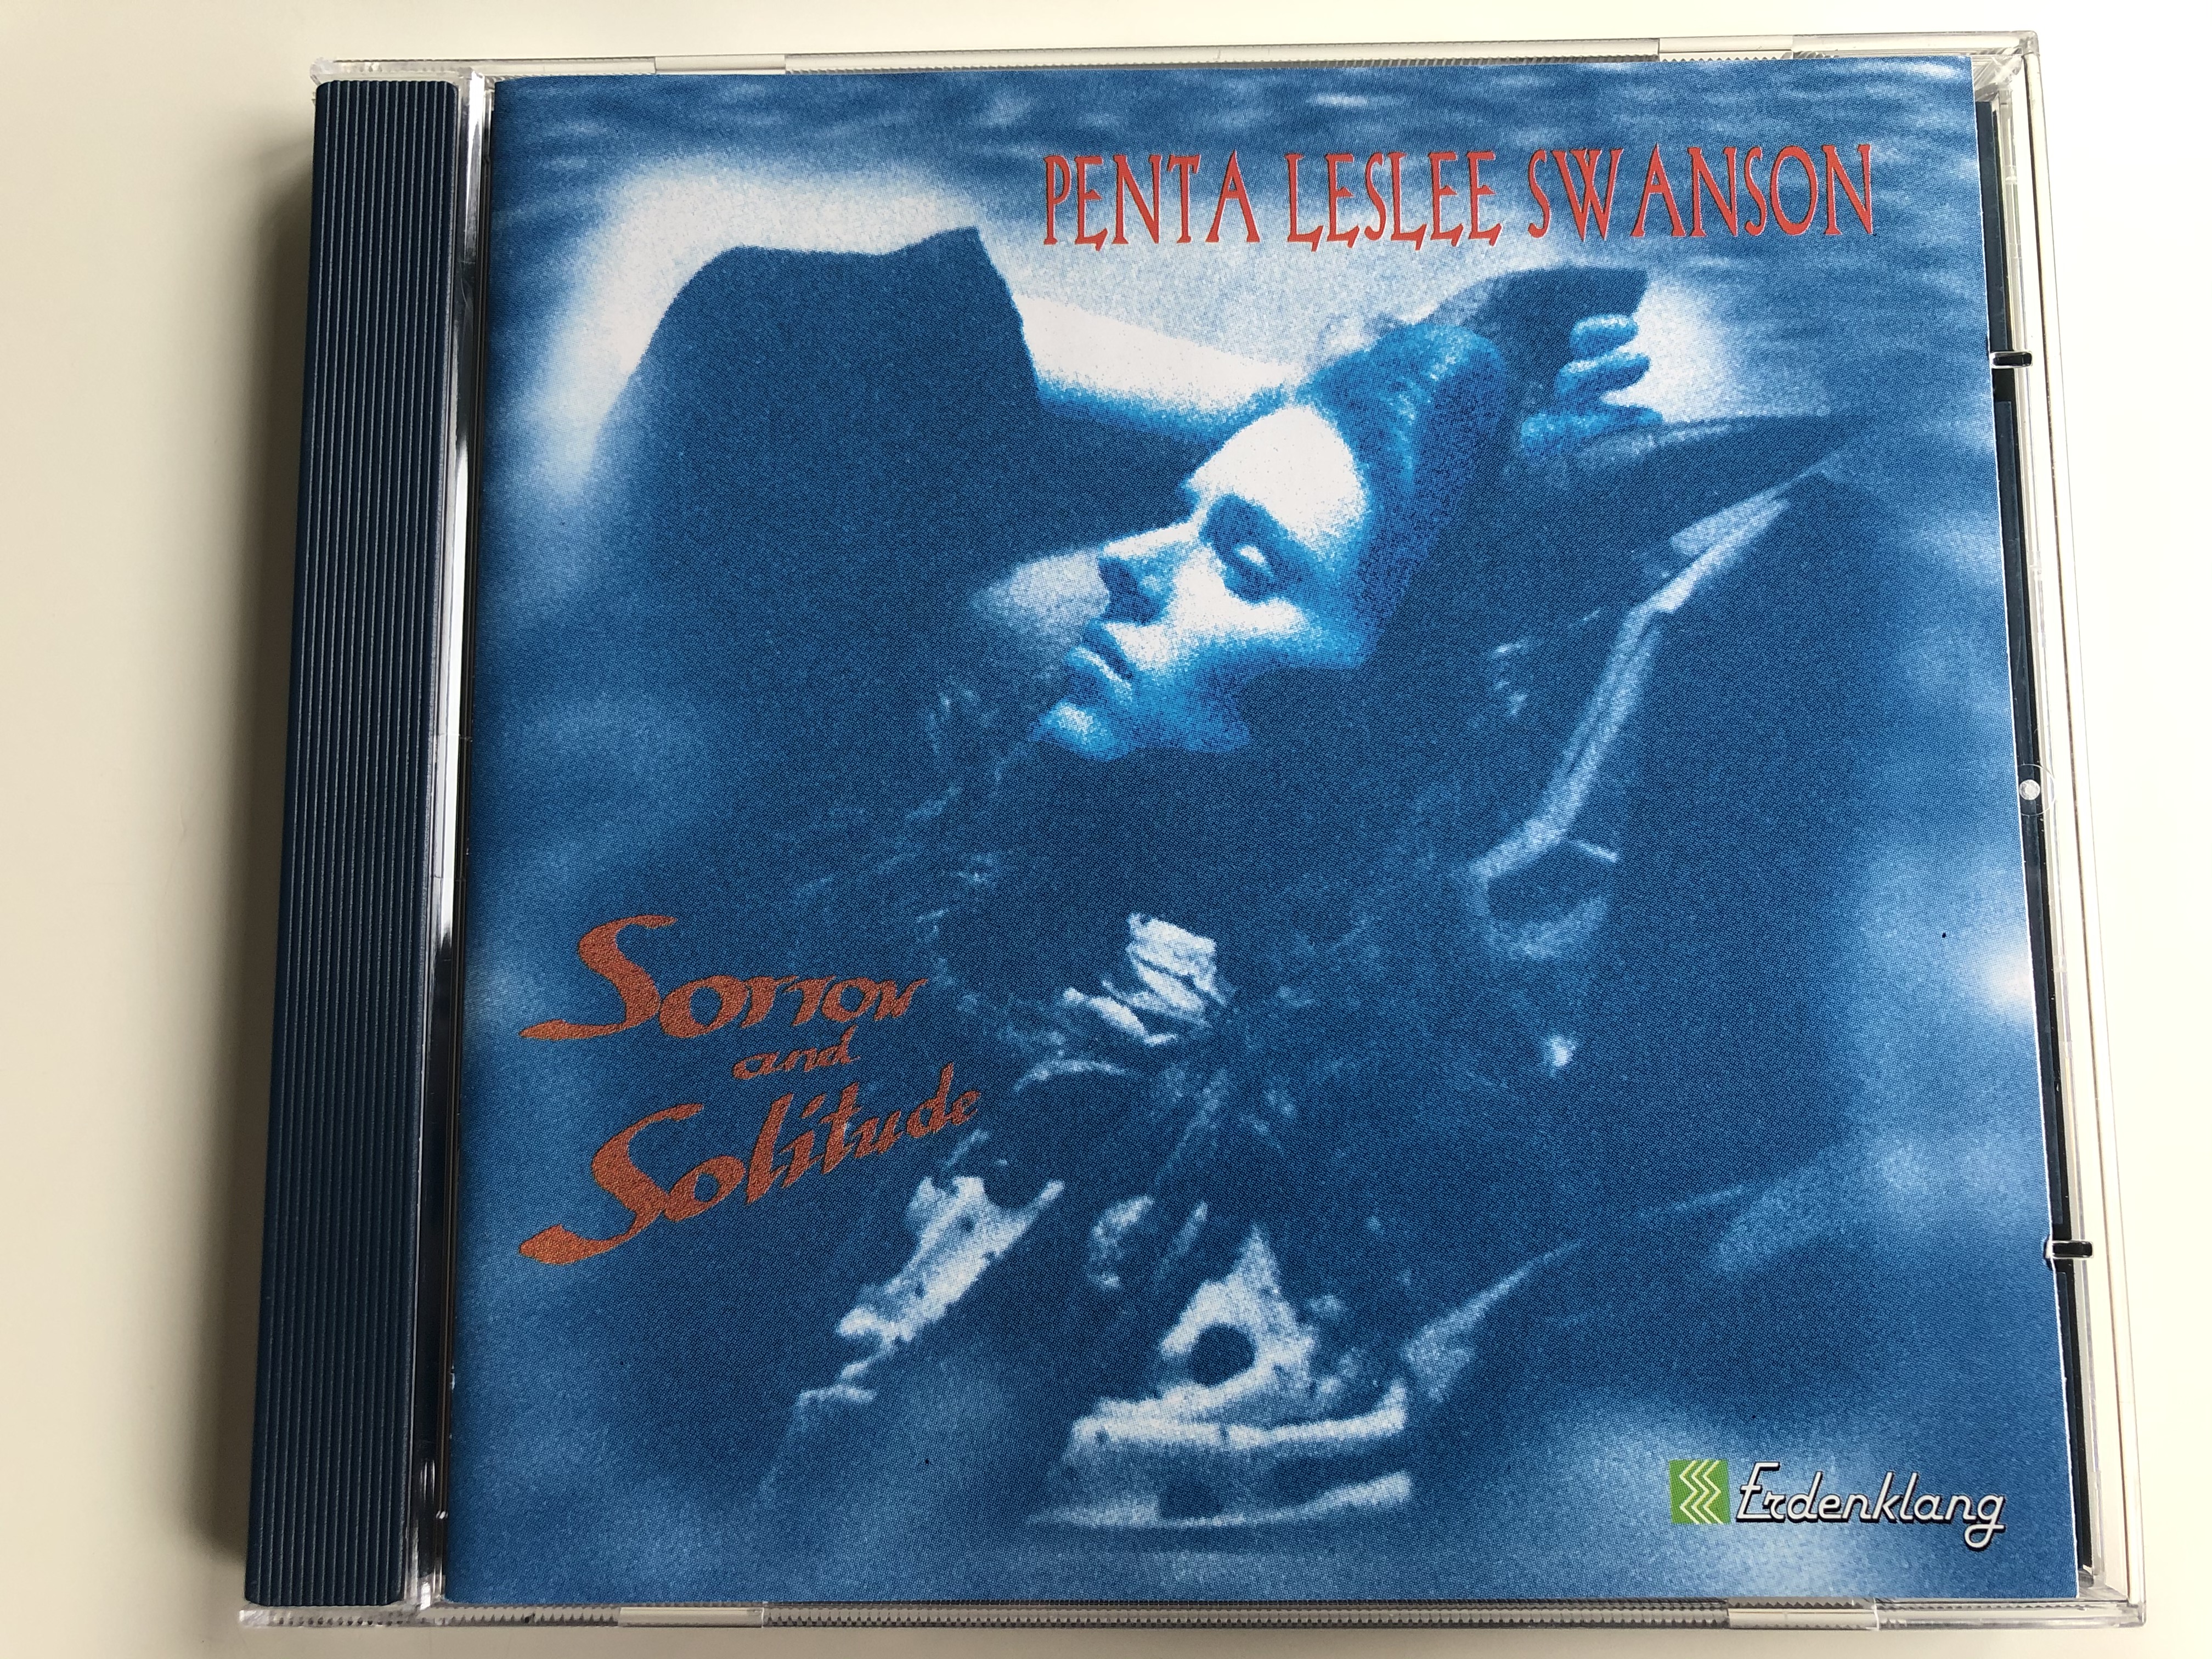 penta-leslee-swanson-sorrow-and-solitude-erdenklang-audio-cd-1994-stereo-40732-1-.jpg